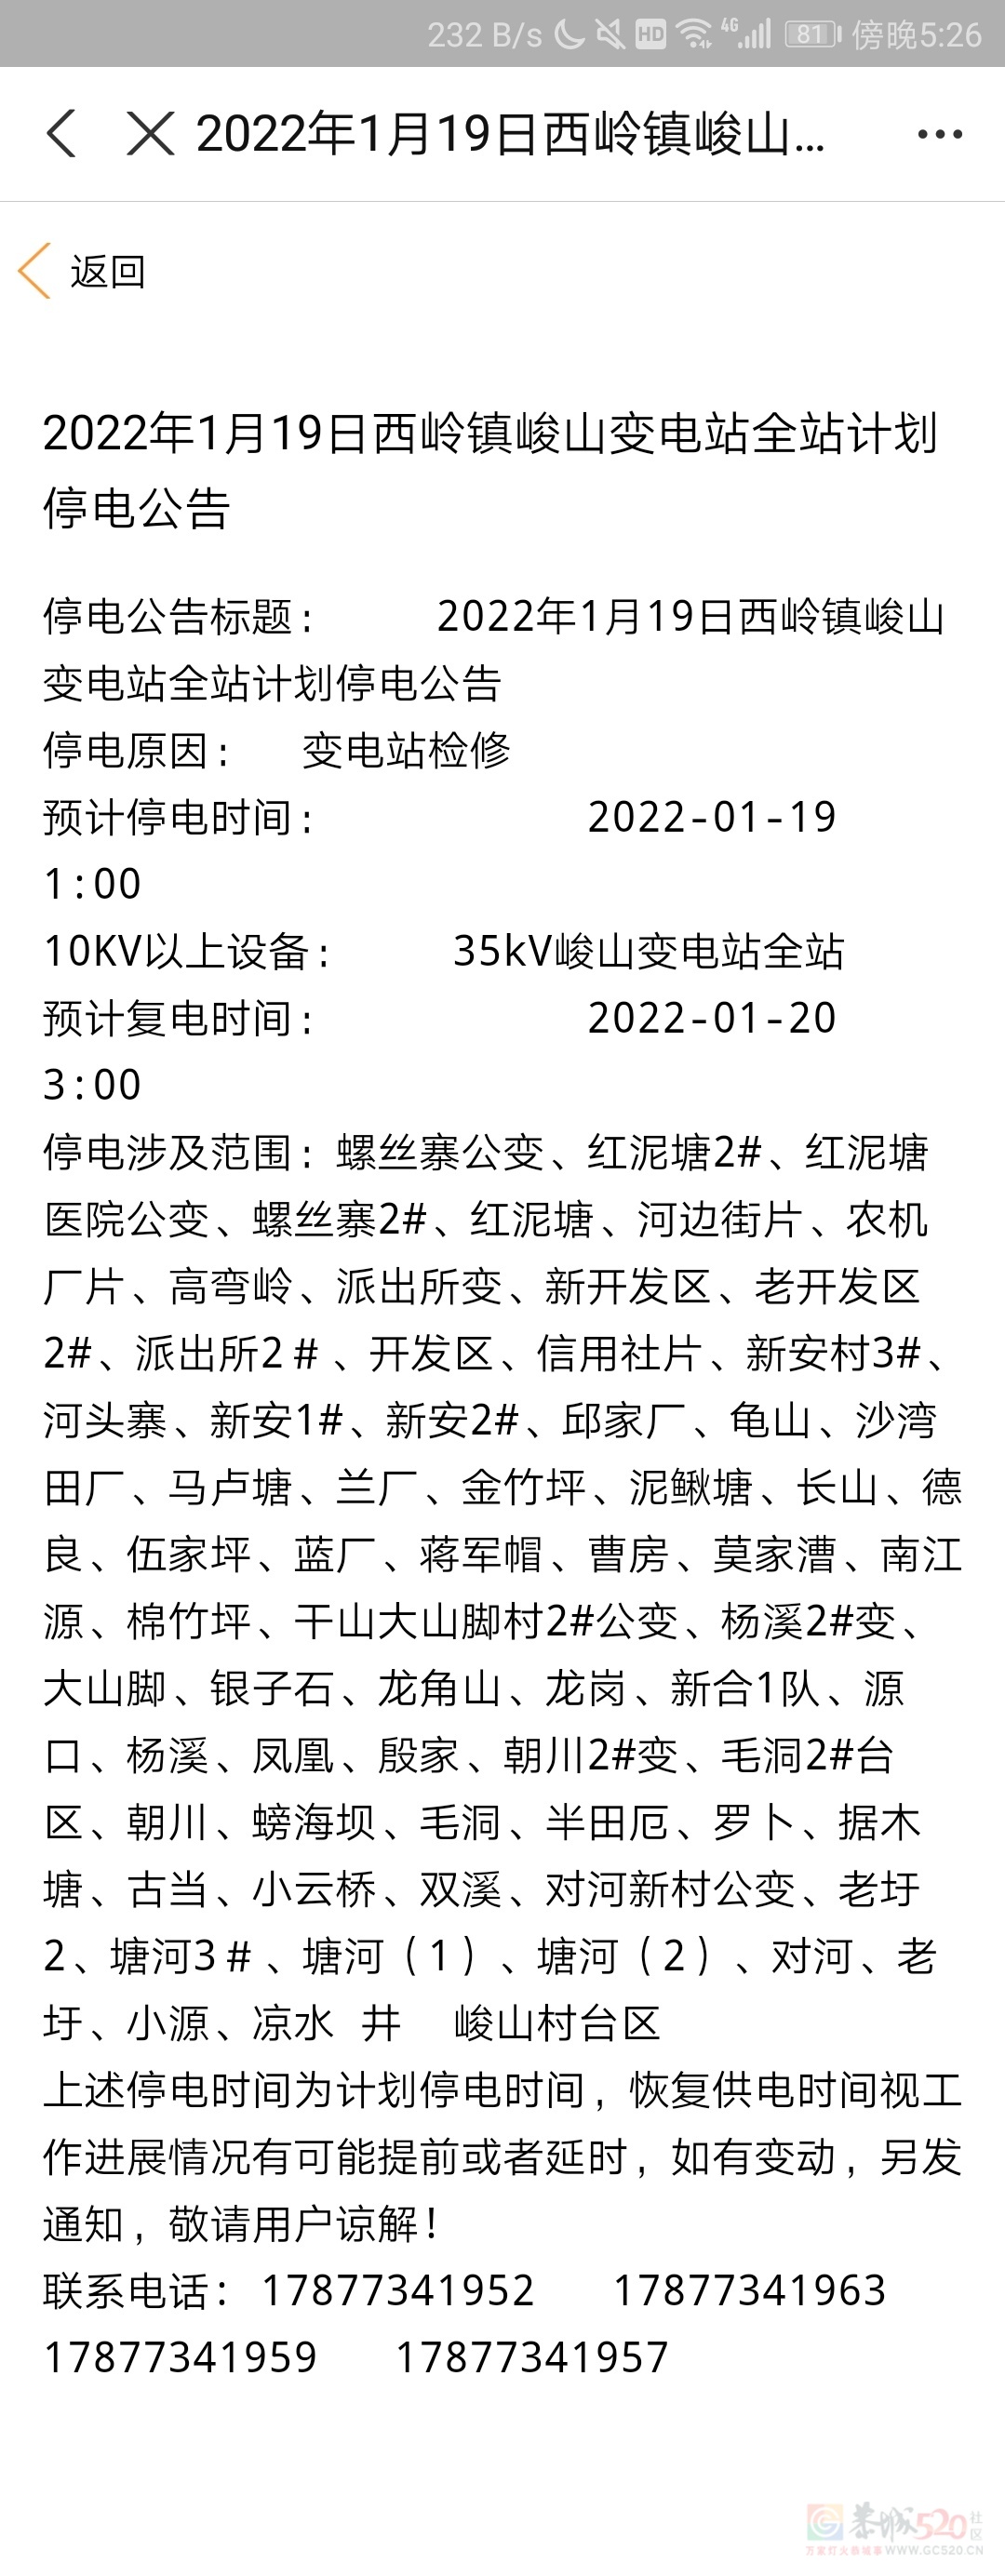 2022年1月19日西岭镇峻山变电站全站计划停电公告638 / 作者:遗憾太多了 / 帖子ID:292109